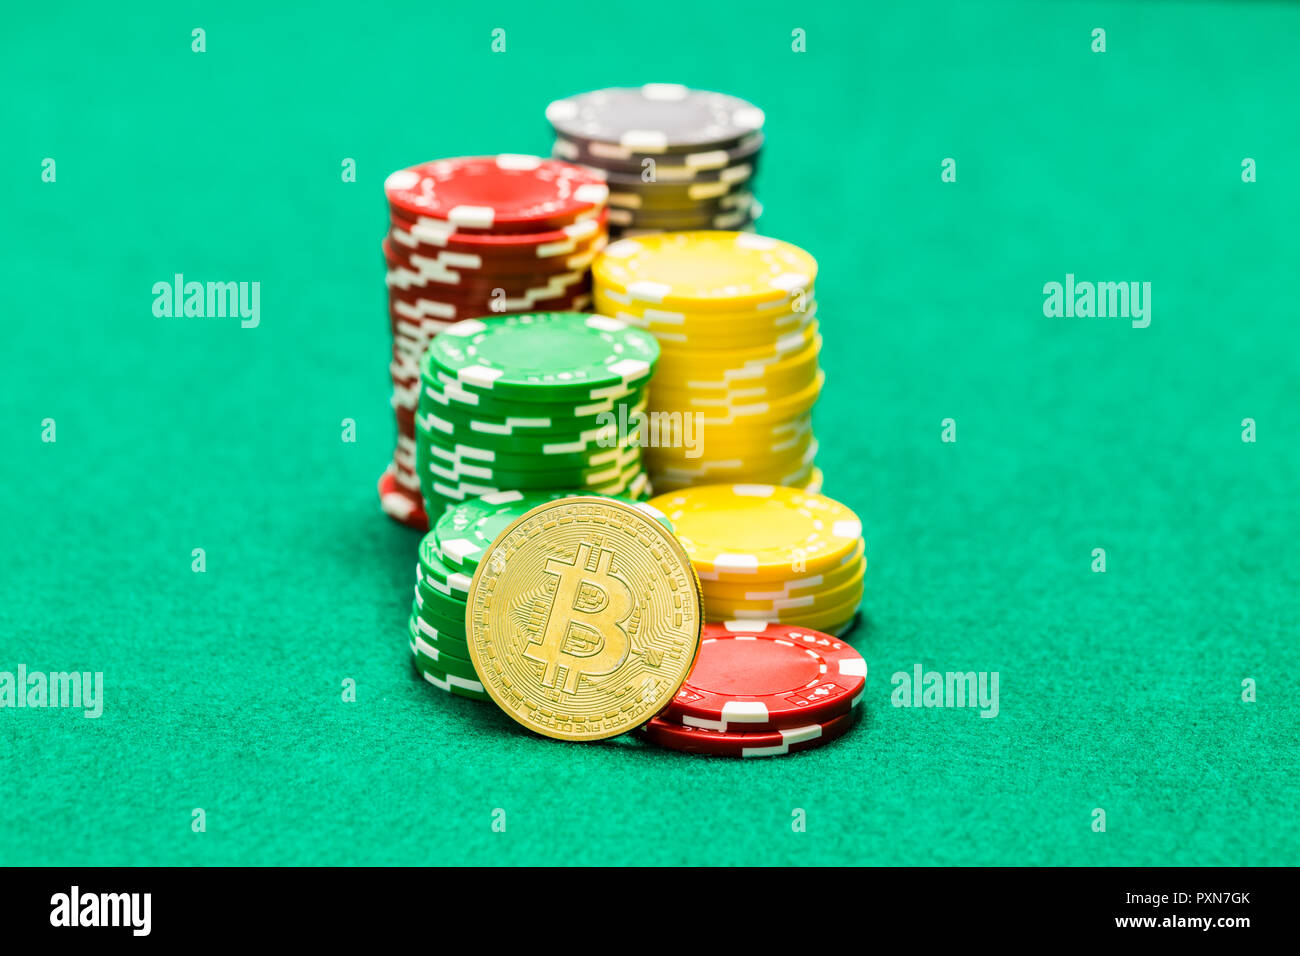 10 Ideen zu crypto betting sites, die wirklich funktionieren